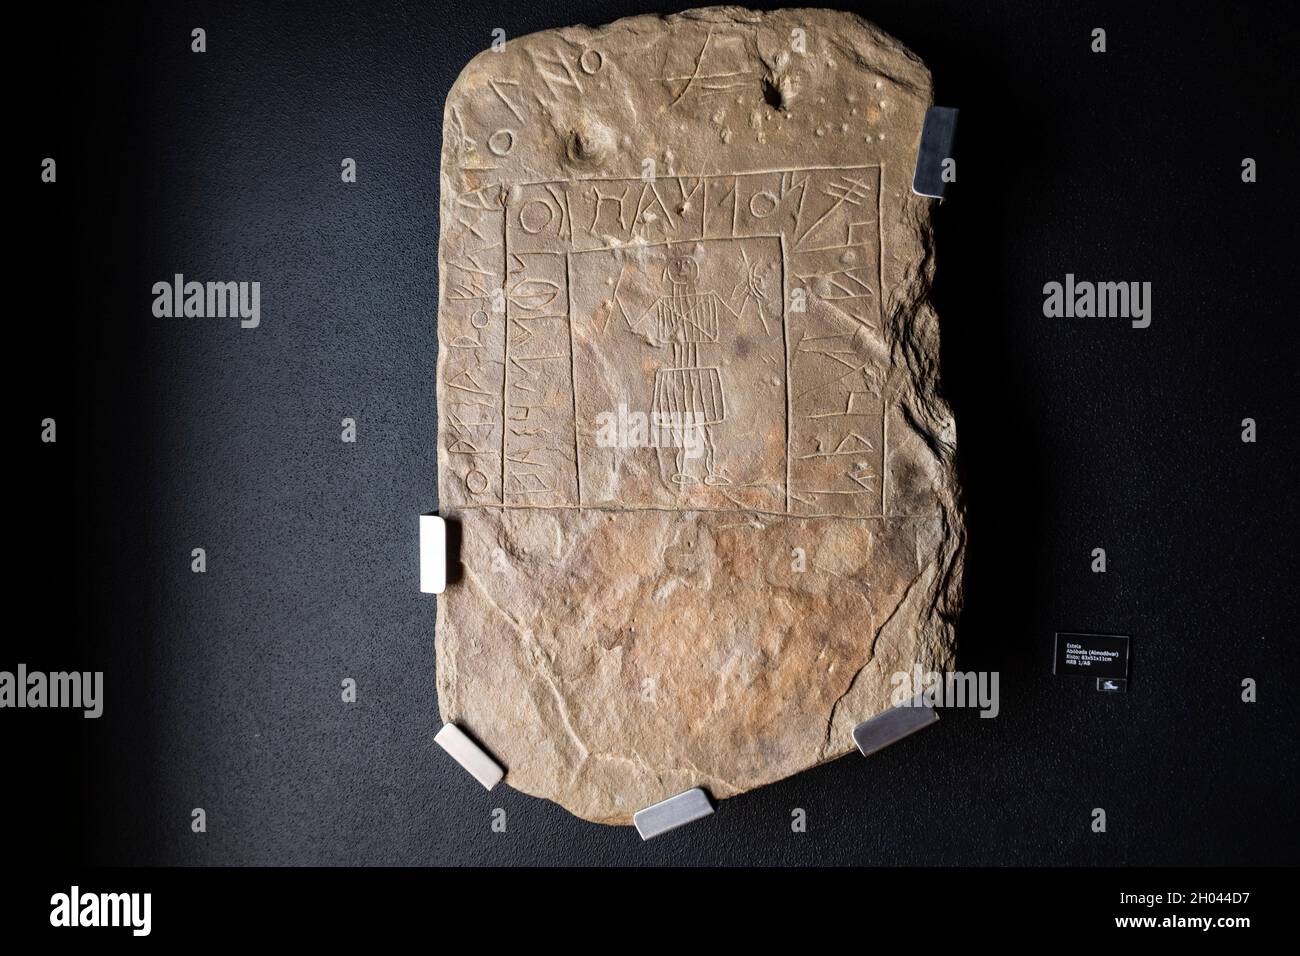 Tavolette di pietra con antichi scritti di scrittura sudoccidentale al Museu da Escrita do Sudoeste Museum di Almodóvar, distretto di Beja, Portogallo, Europa Foto Stock